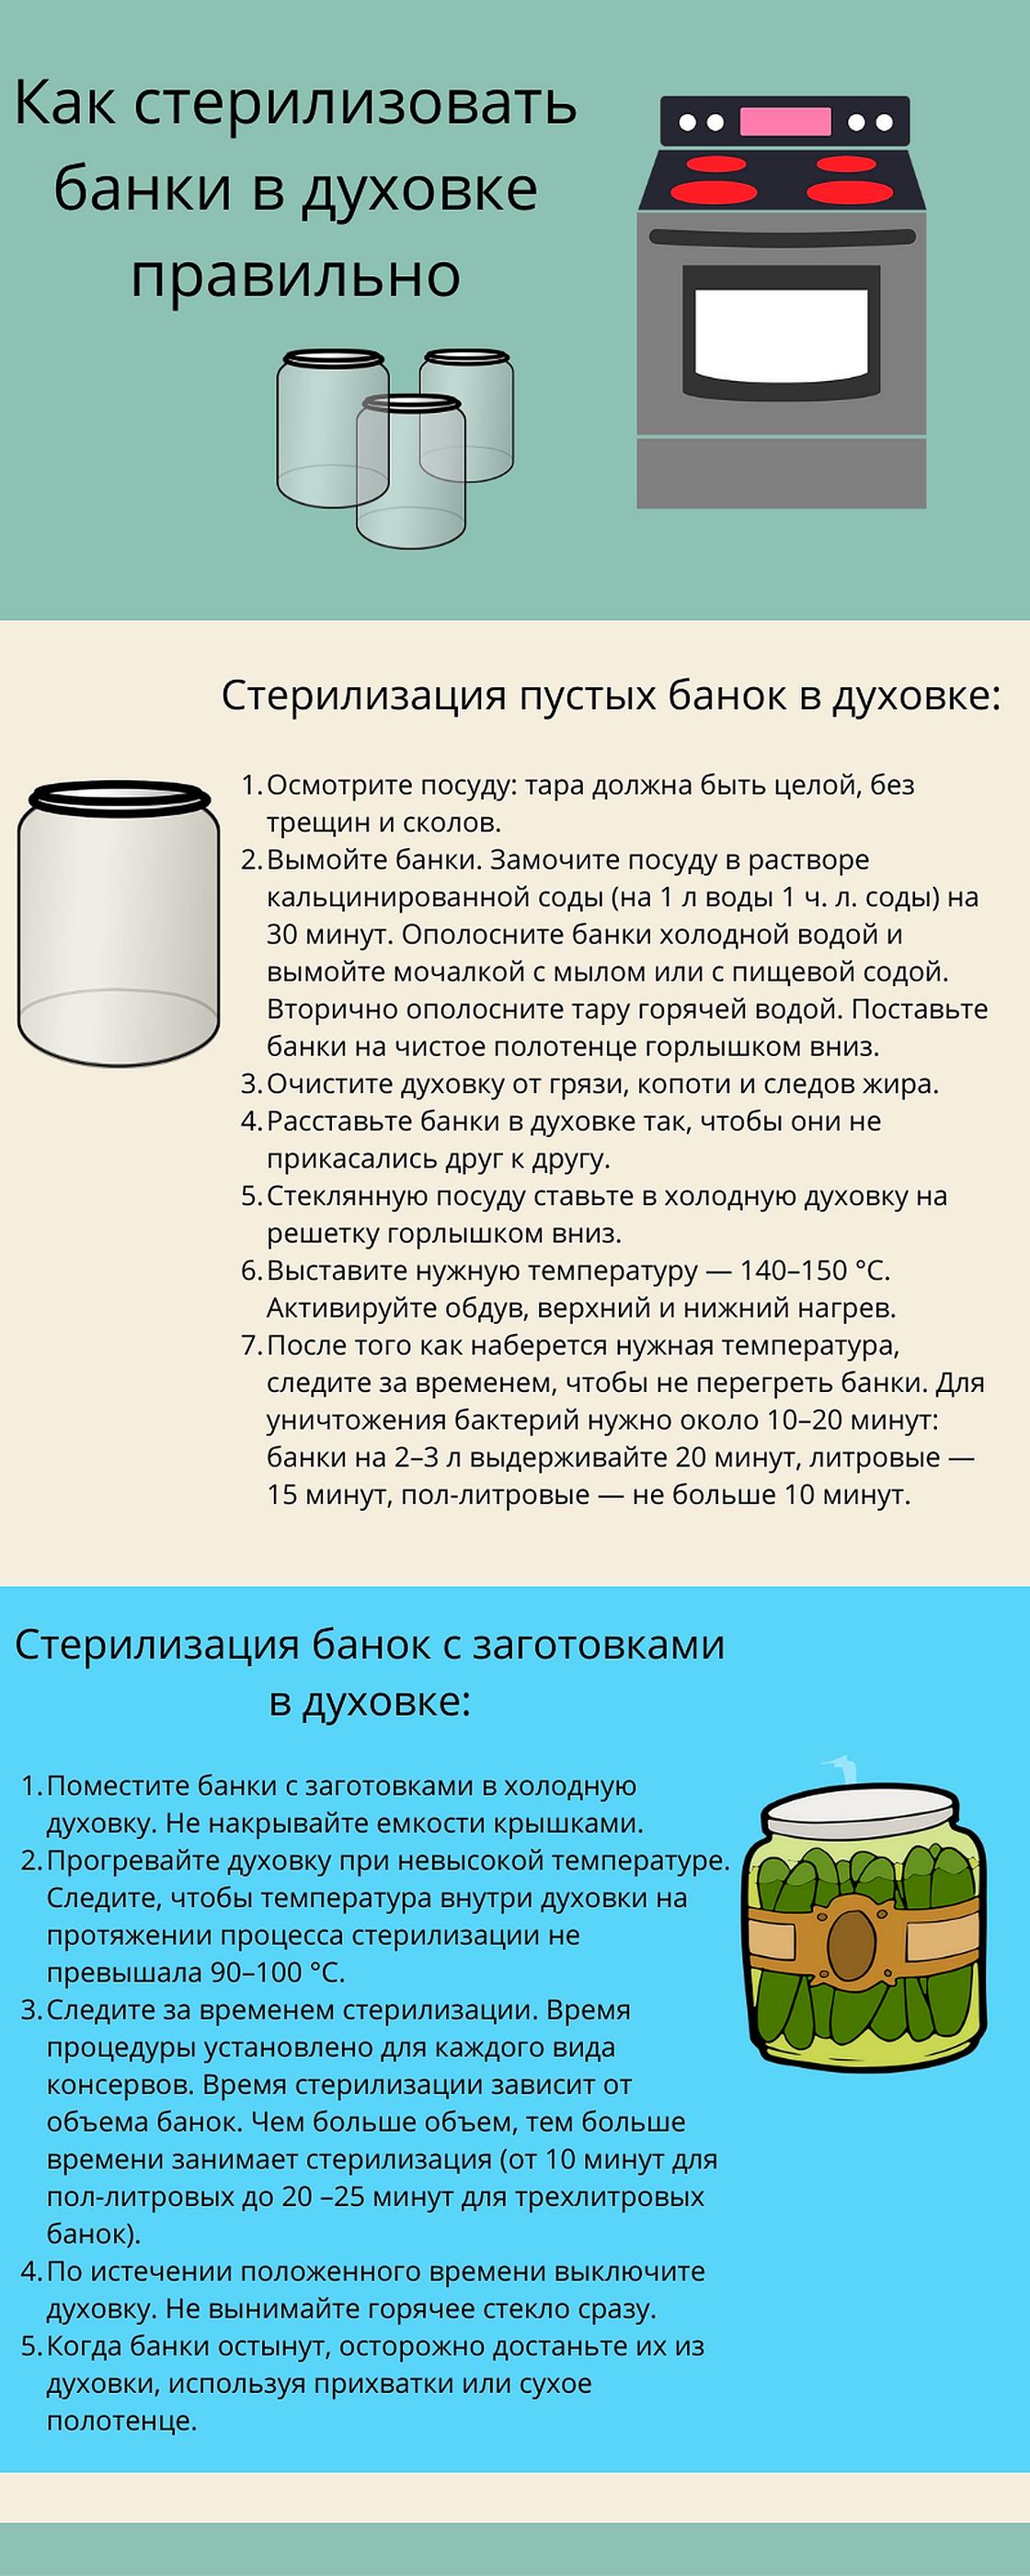 Инфографика: как стерилизовать банки в духовке